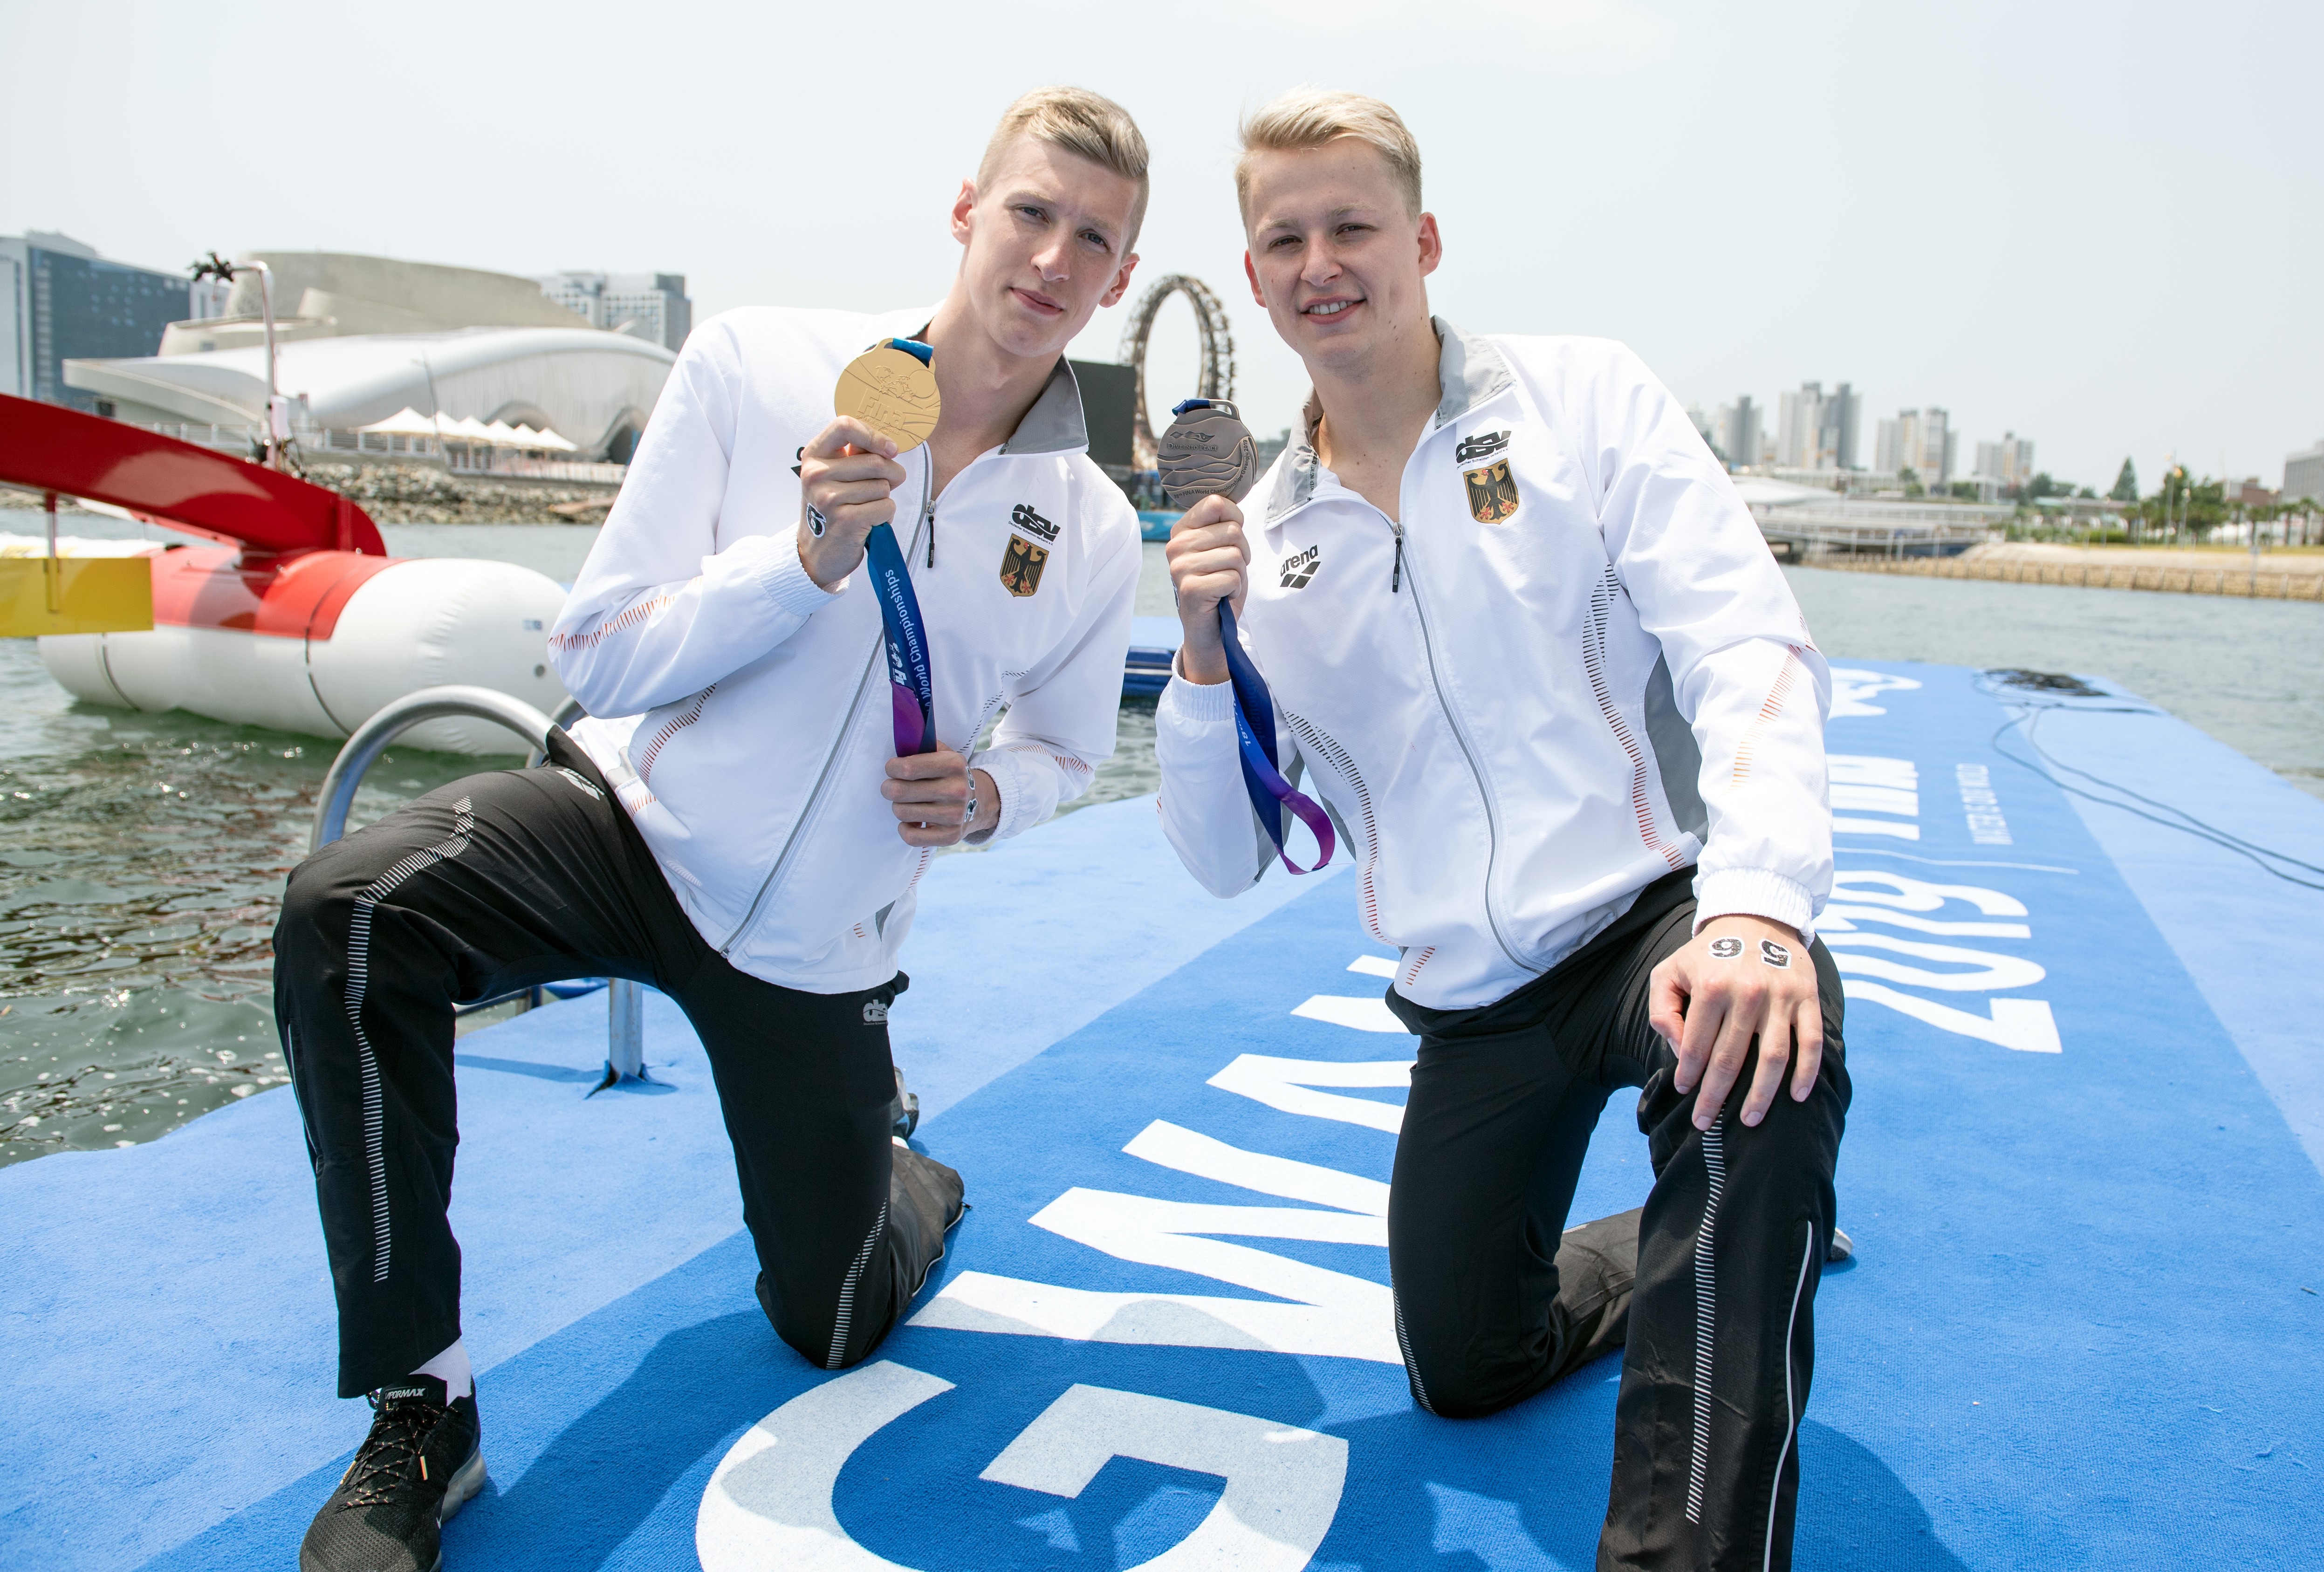 Weltmeister Florian Wellbrock und Rob Muffels strahlen mit ihren WM-Medaillen um die Wette. (Foto: dpa)